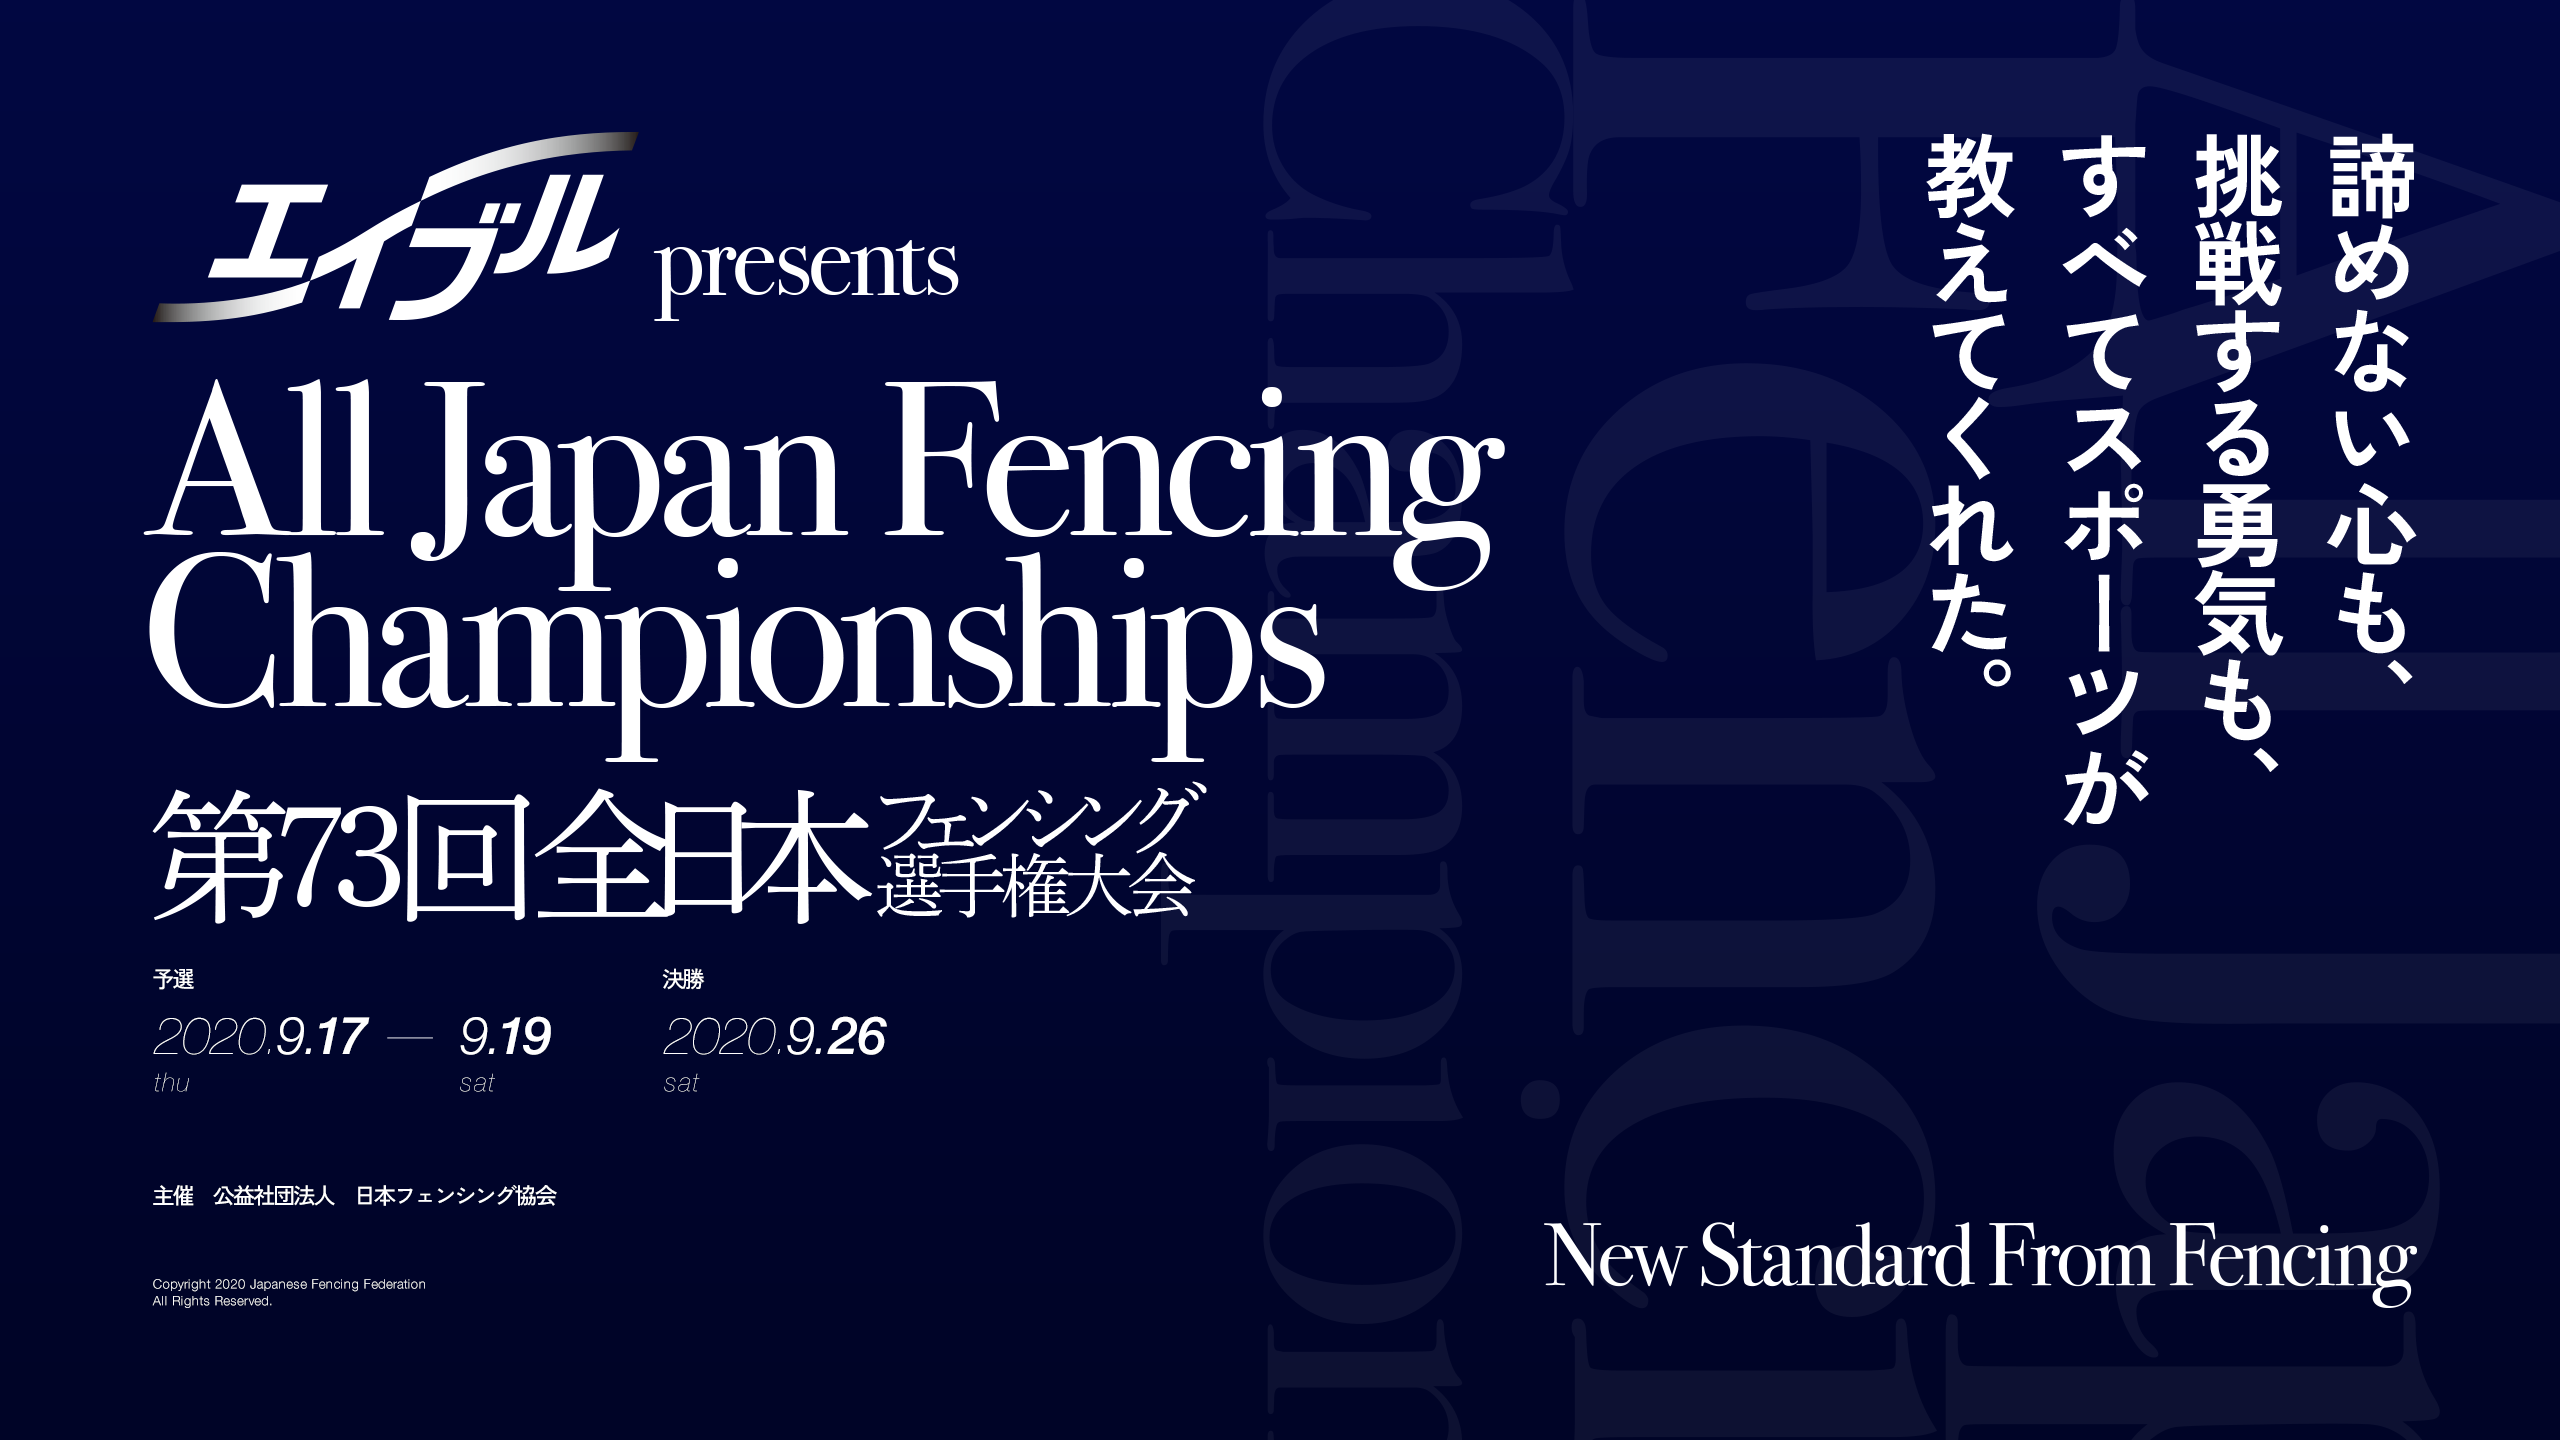 サーバーワークス、公益社団法人日本フェンシング協会主催の 「第73回全日本フェンシング選手権大会」に協賛